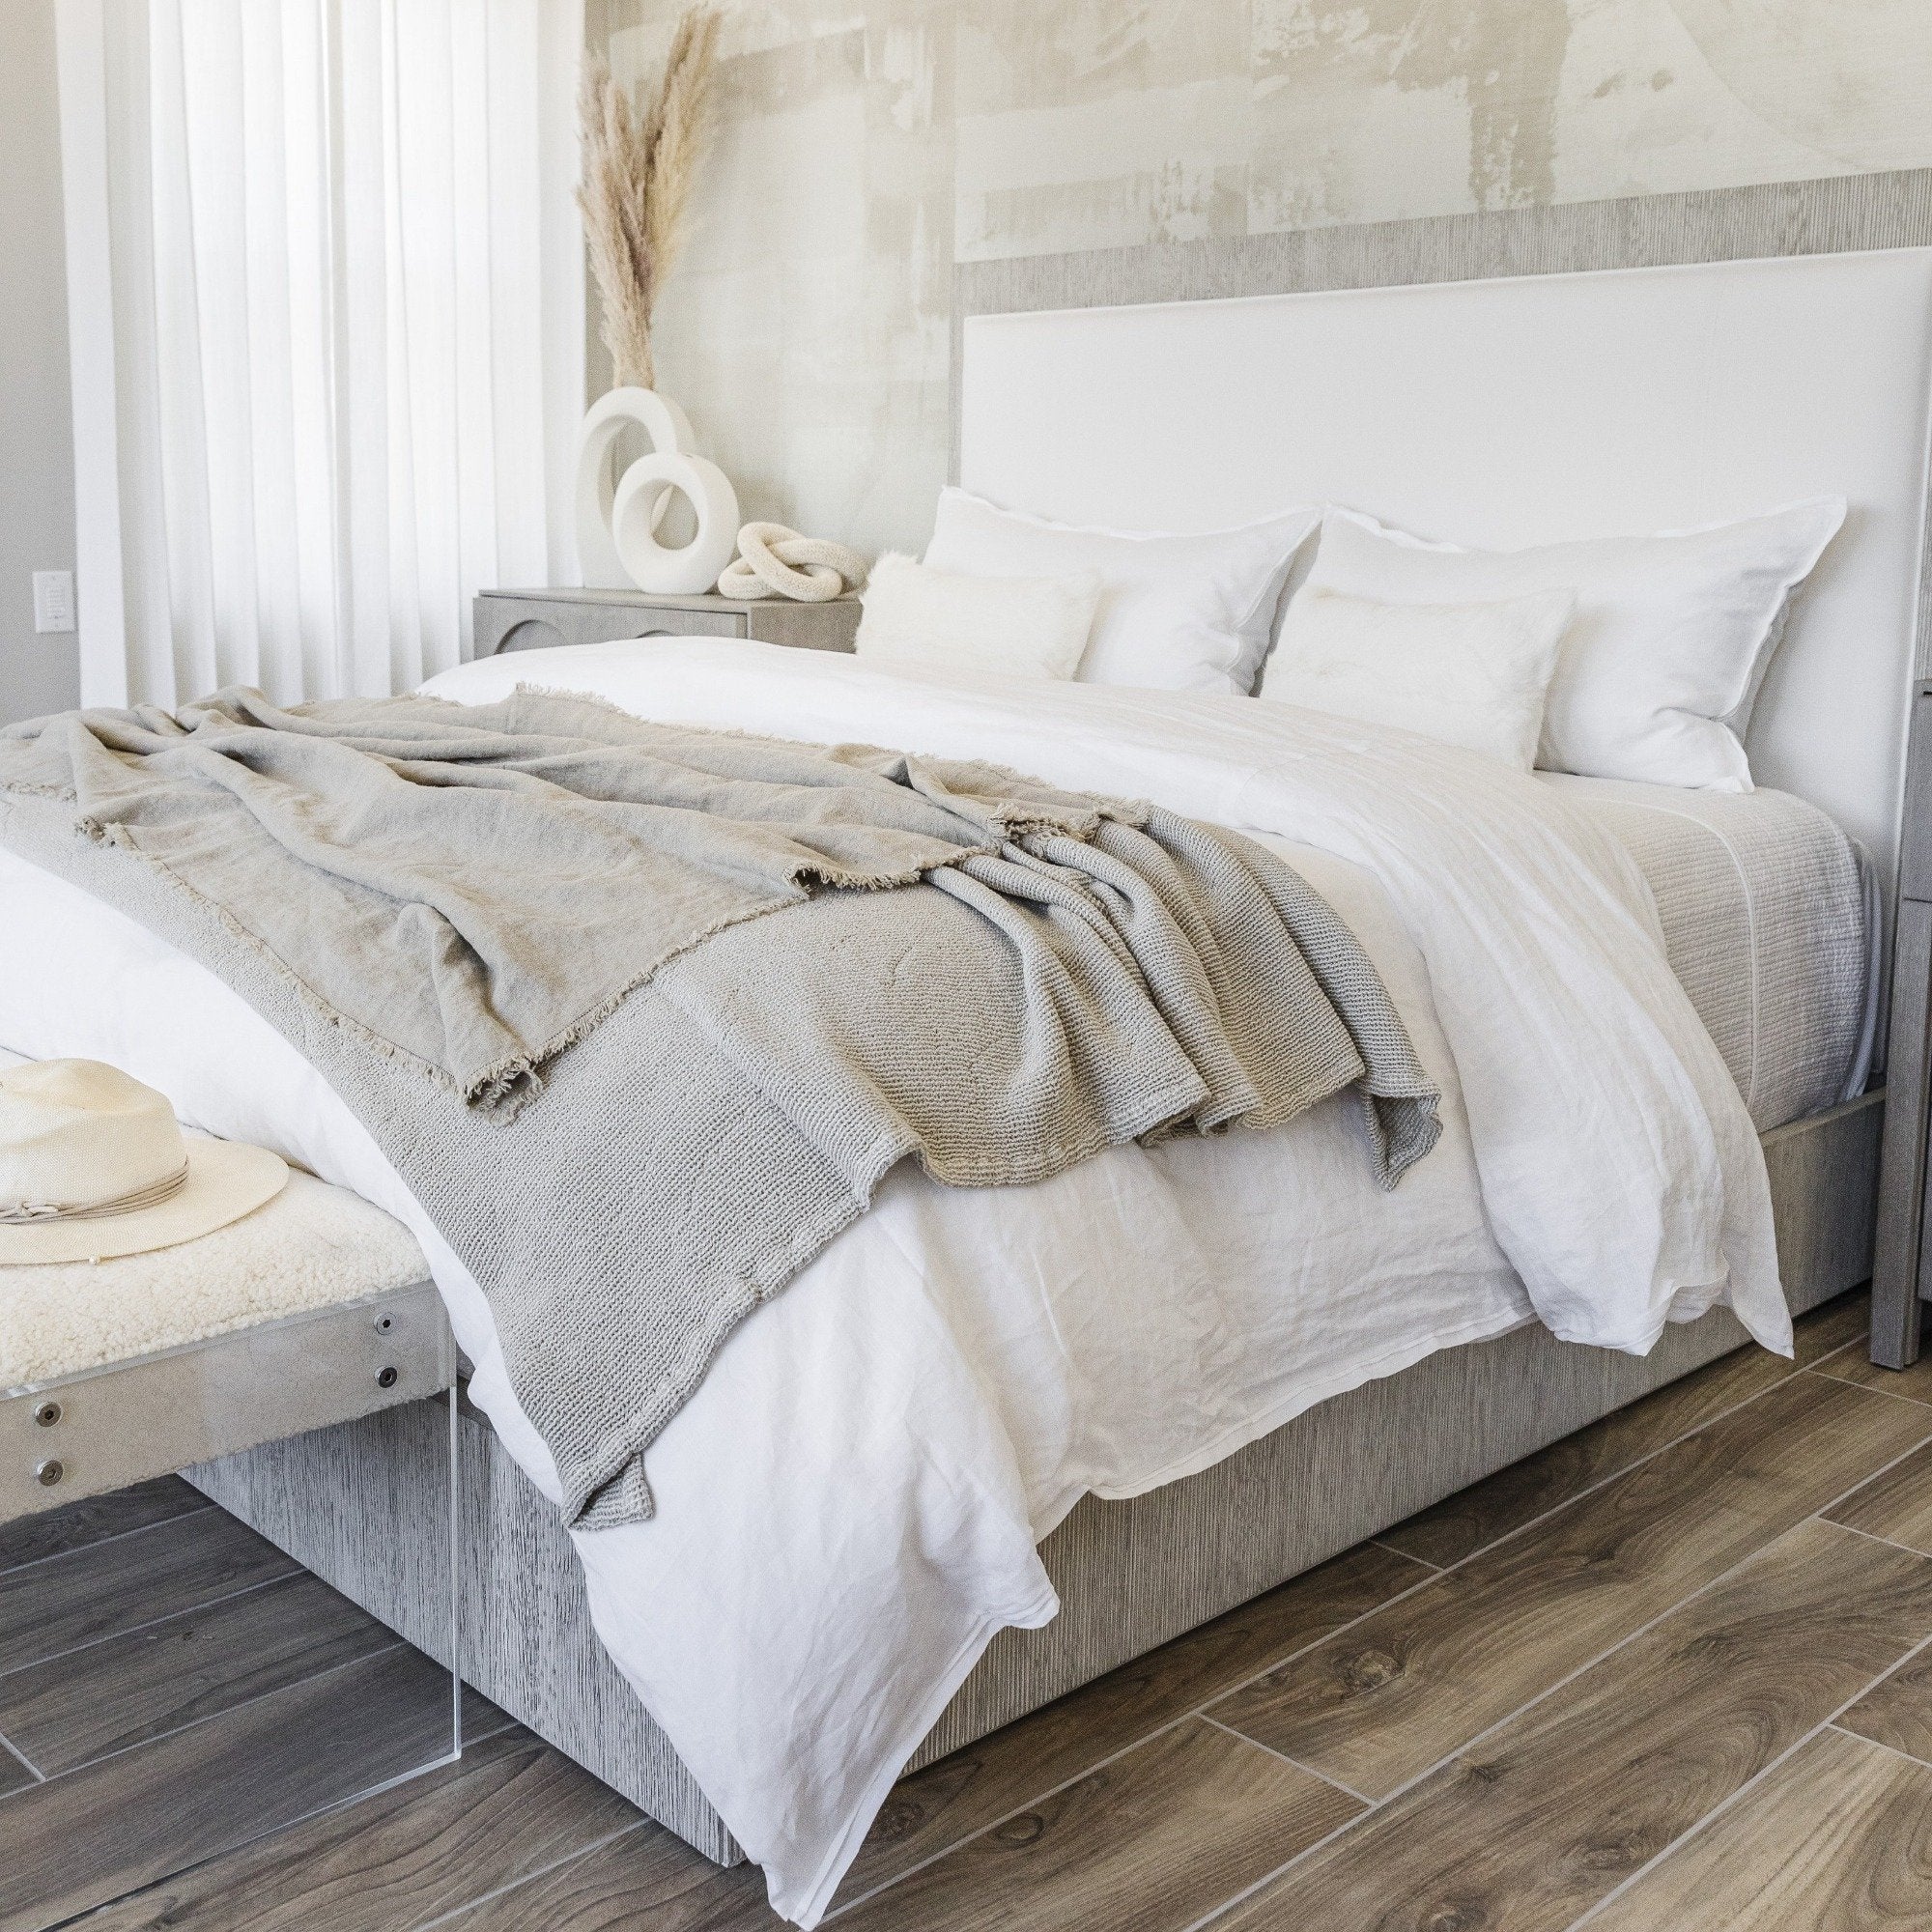 Goat Skin Bolster Pillow - StyleMeGHD - Boho Bedroom Decor